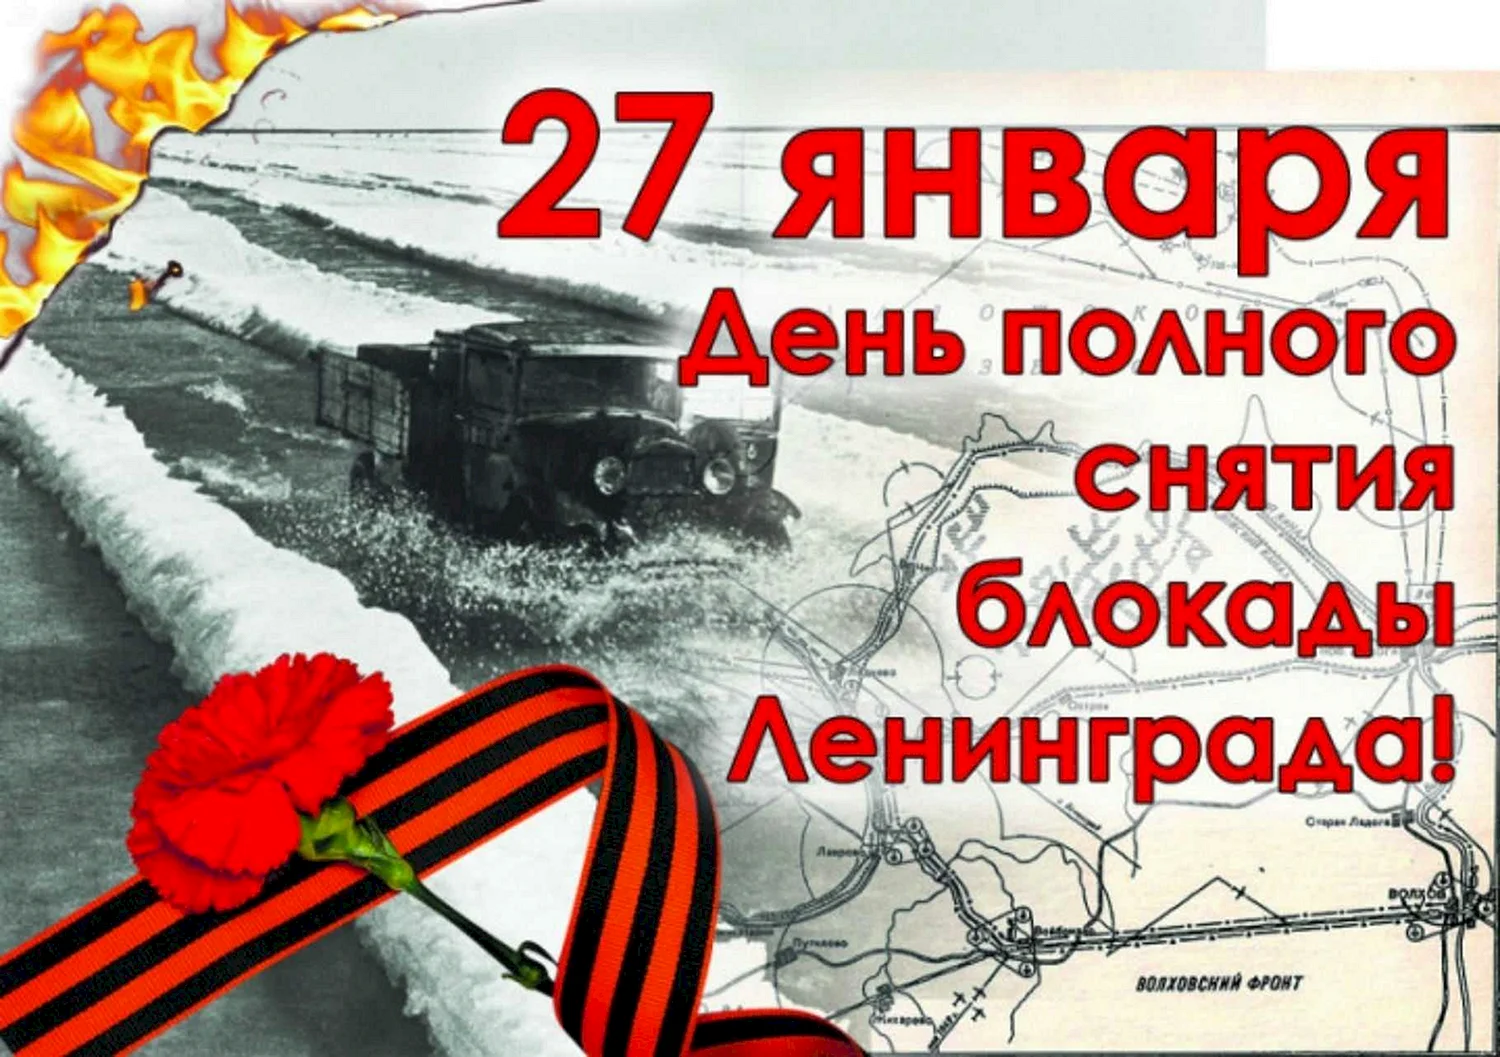 27 Января день снятия блокады Ленинграда